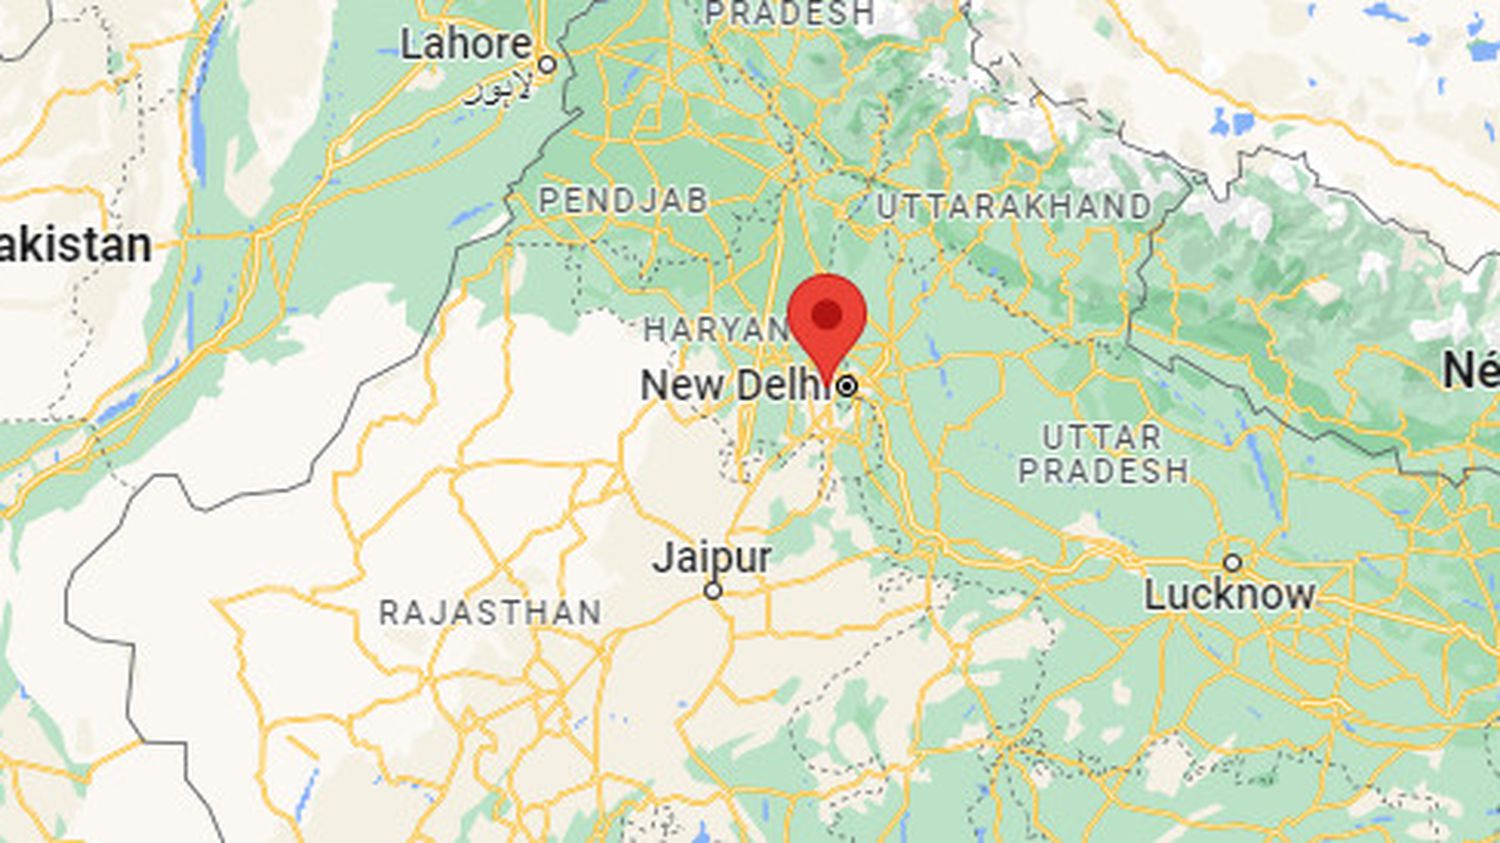 India: Fire kills at least 27 in New Delhi
